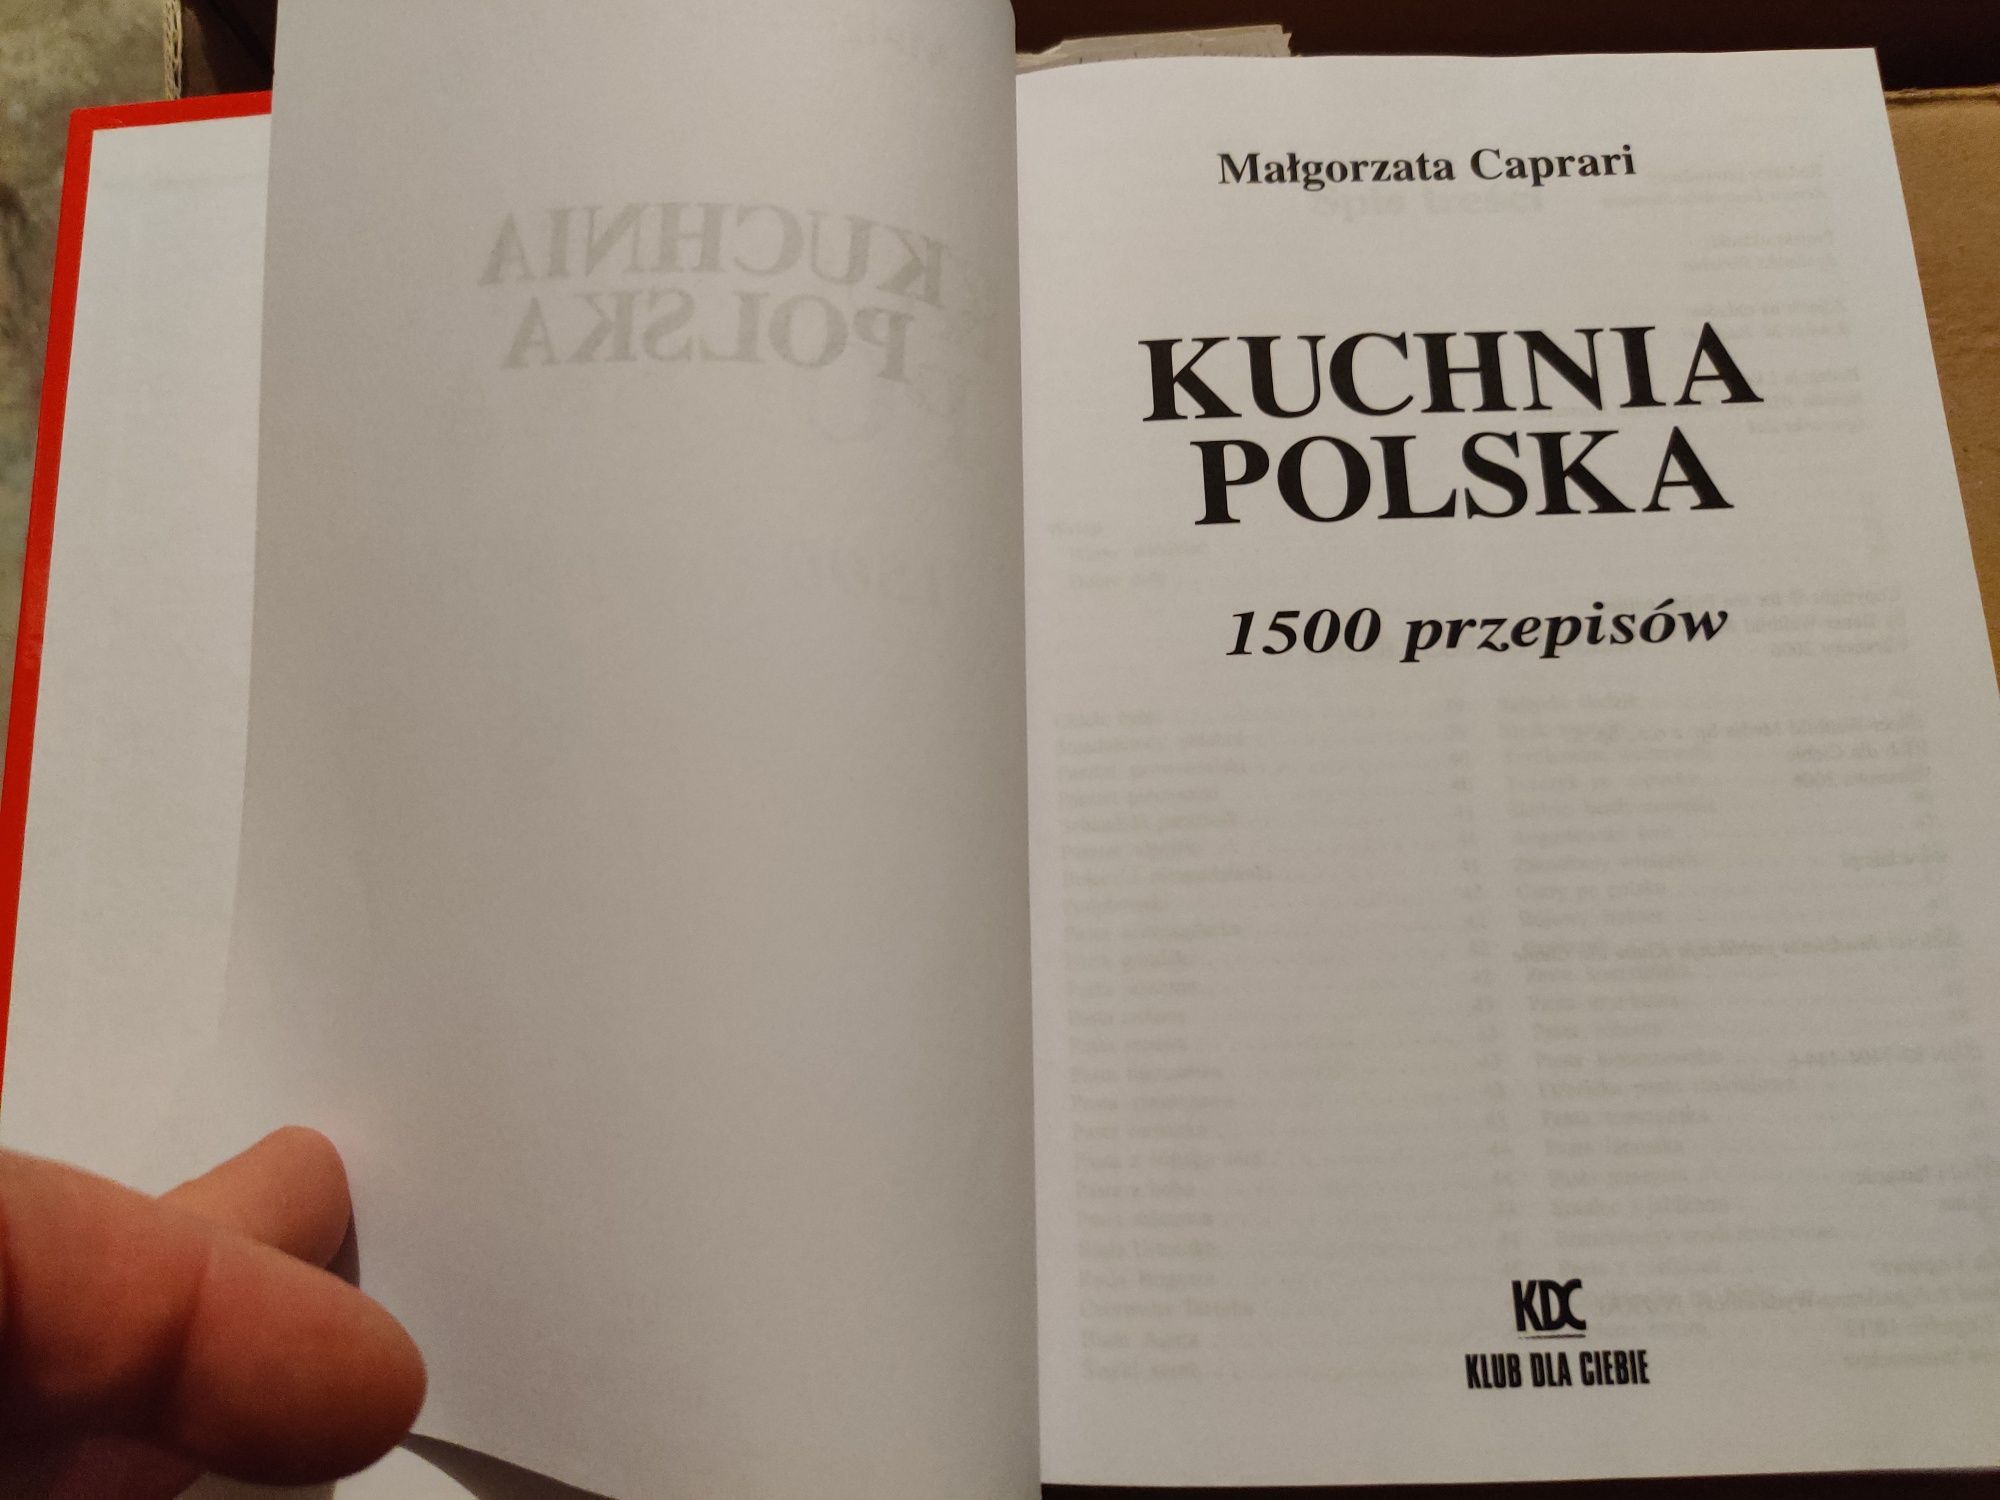 Kuchnia polska przepisy kulinarne 1500 plus książka